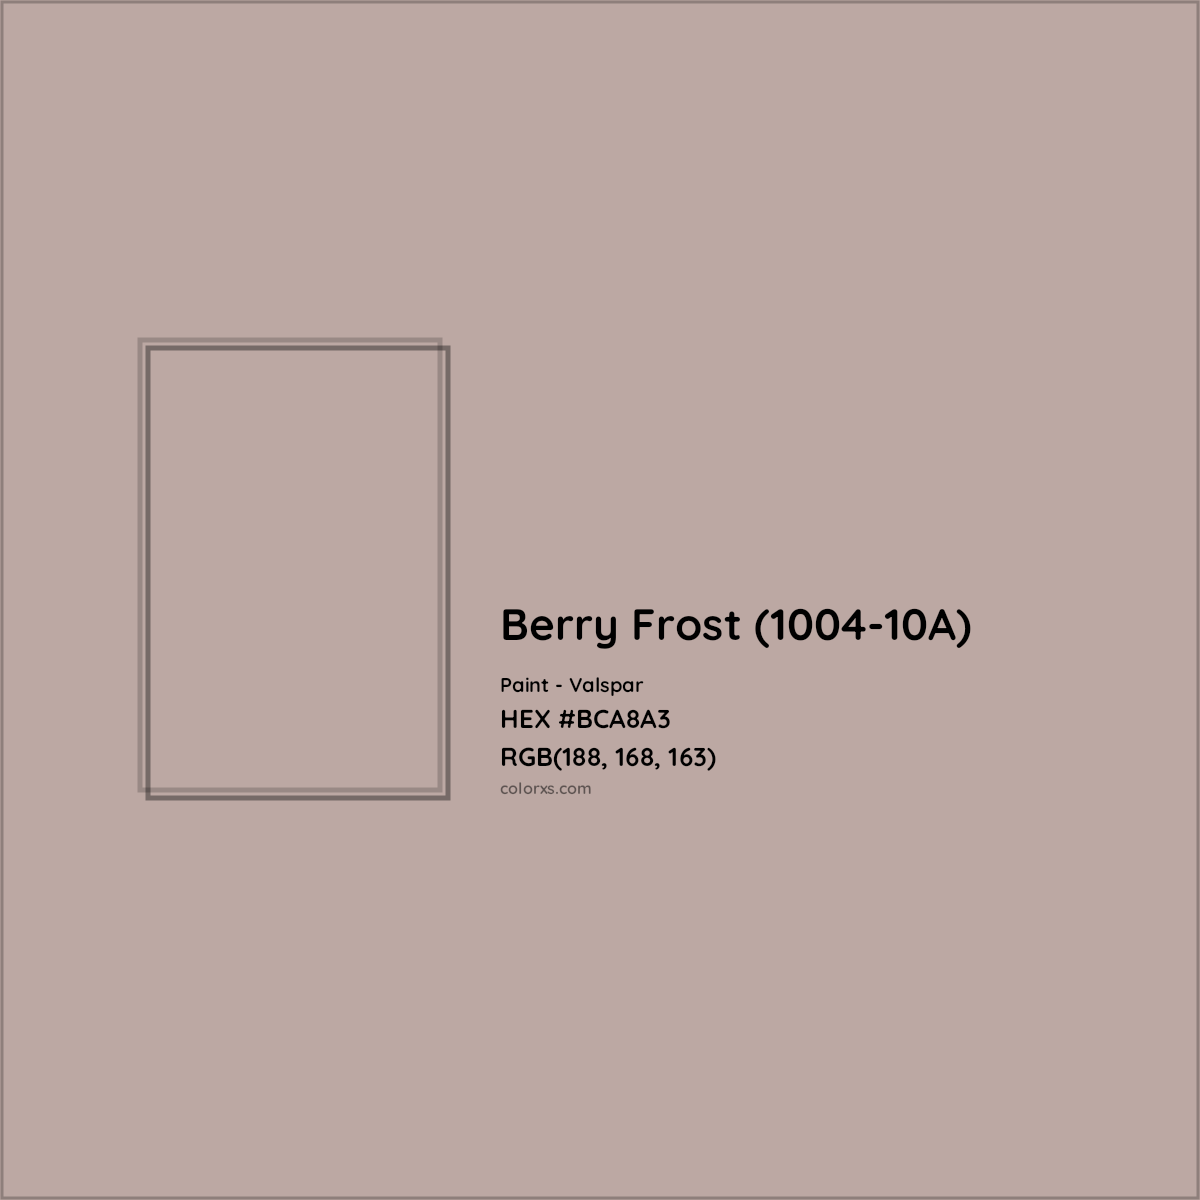 HEX #BCA8A3 Berry Frost (1004-10A) Paint Valspar - Color Code